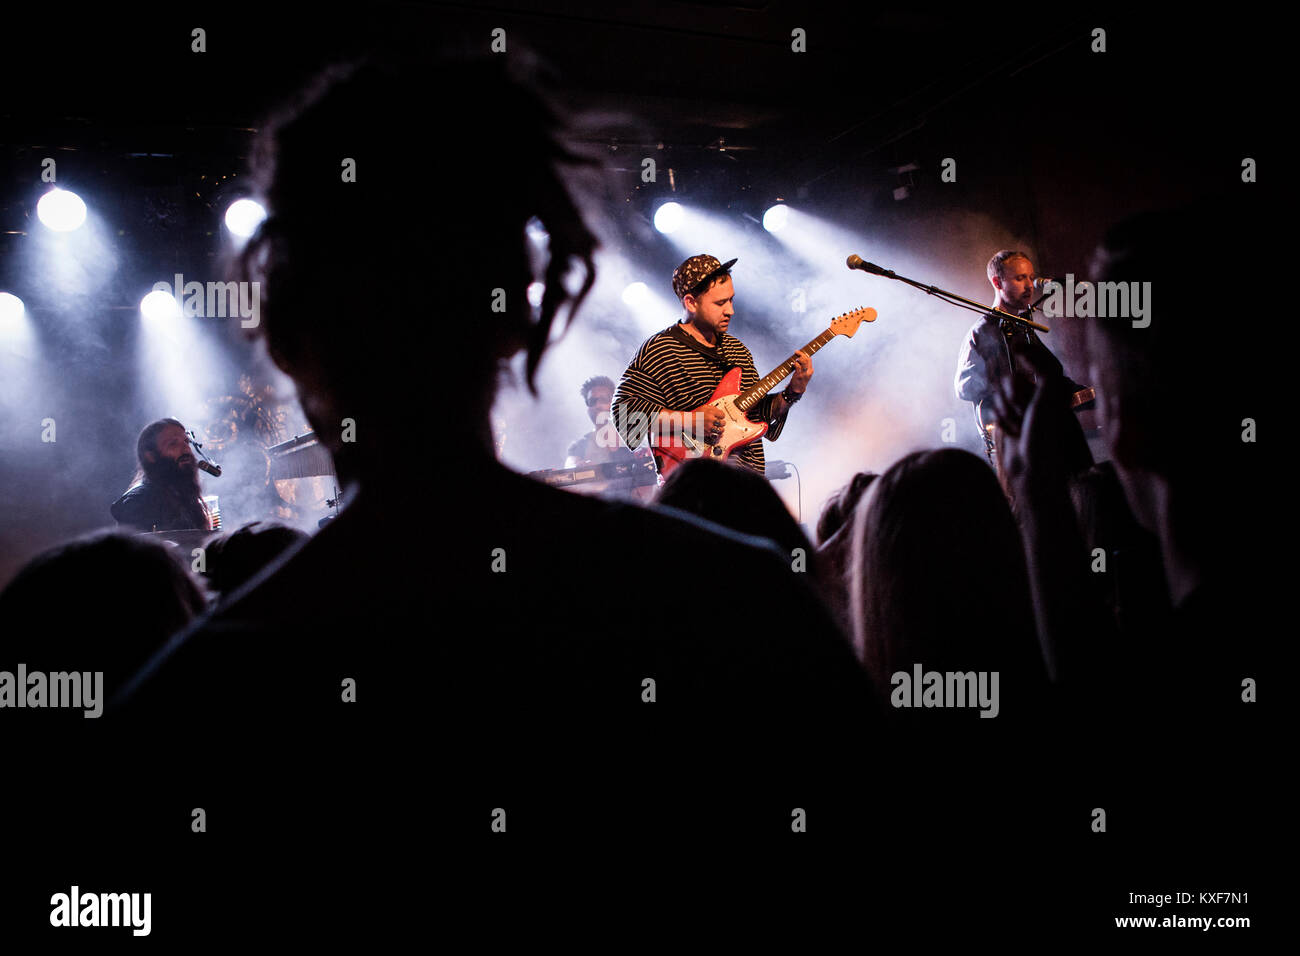 Unknown Mortal Orchestra, l'Amérique et de la Nouvelle Zélande rock band, effectue un concert live à Vega à Copenhague. Ici band fondateur, chanteur et guitariste Ruban Nielson est représenté sur scène. Le Danemark, 12/09 2015. Banque D'Images